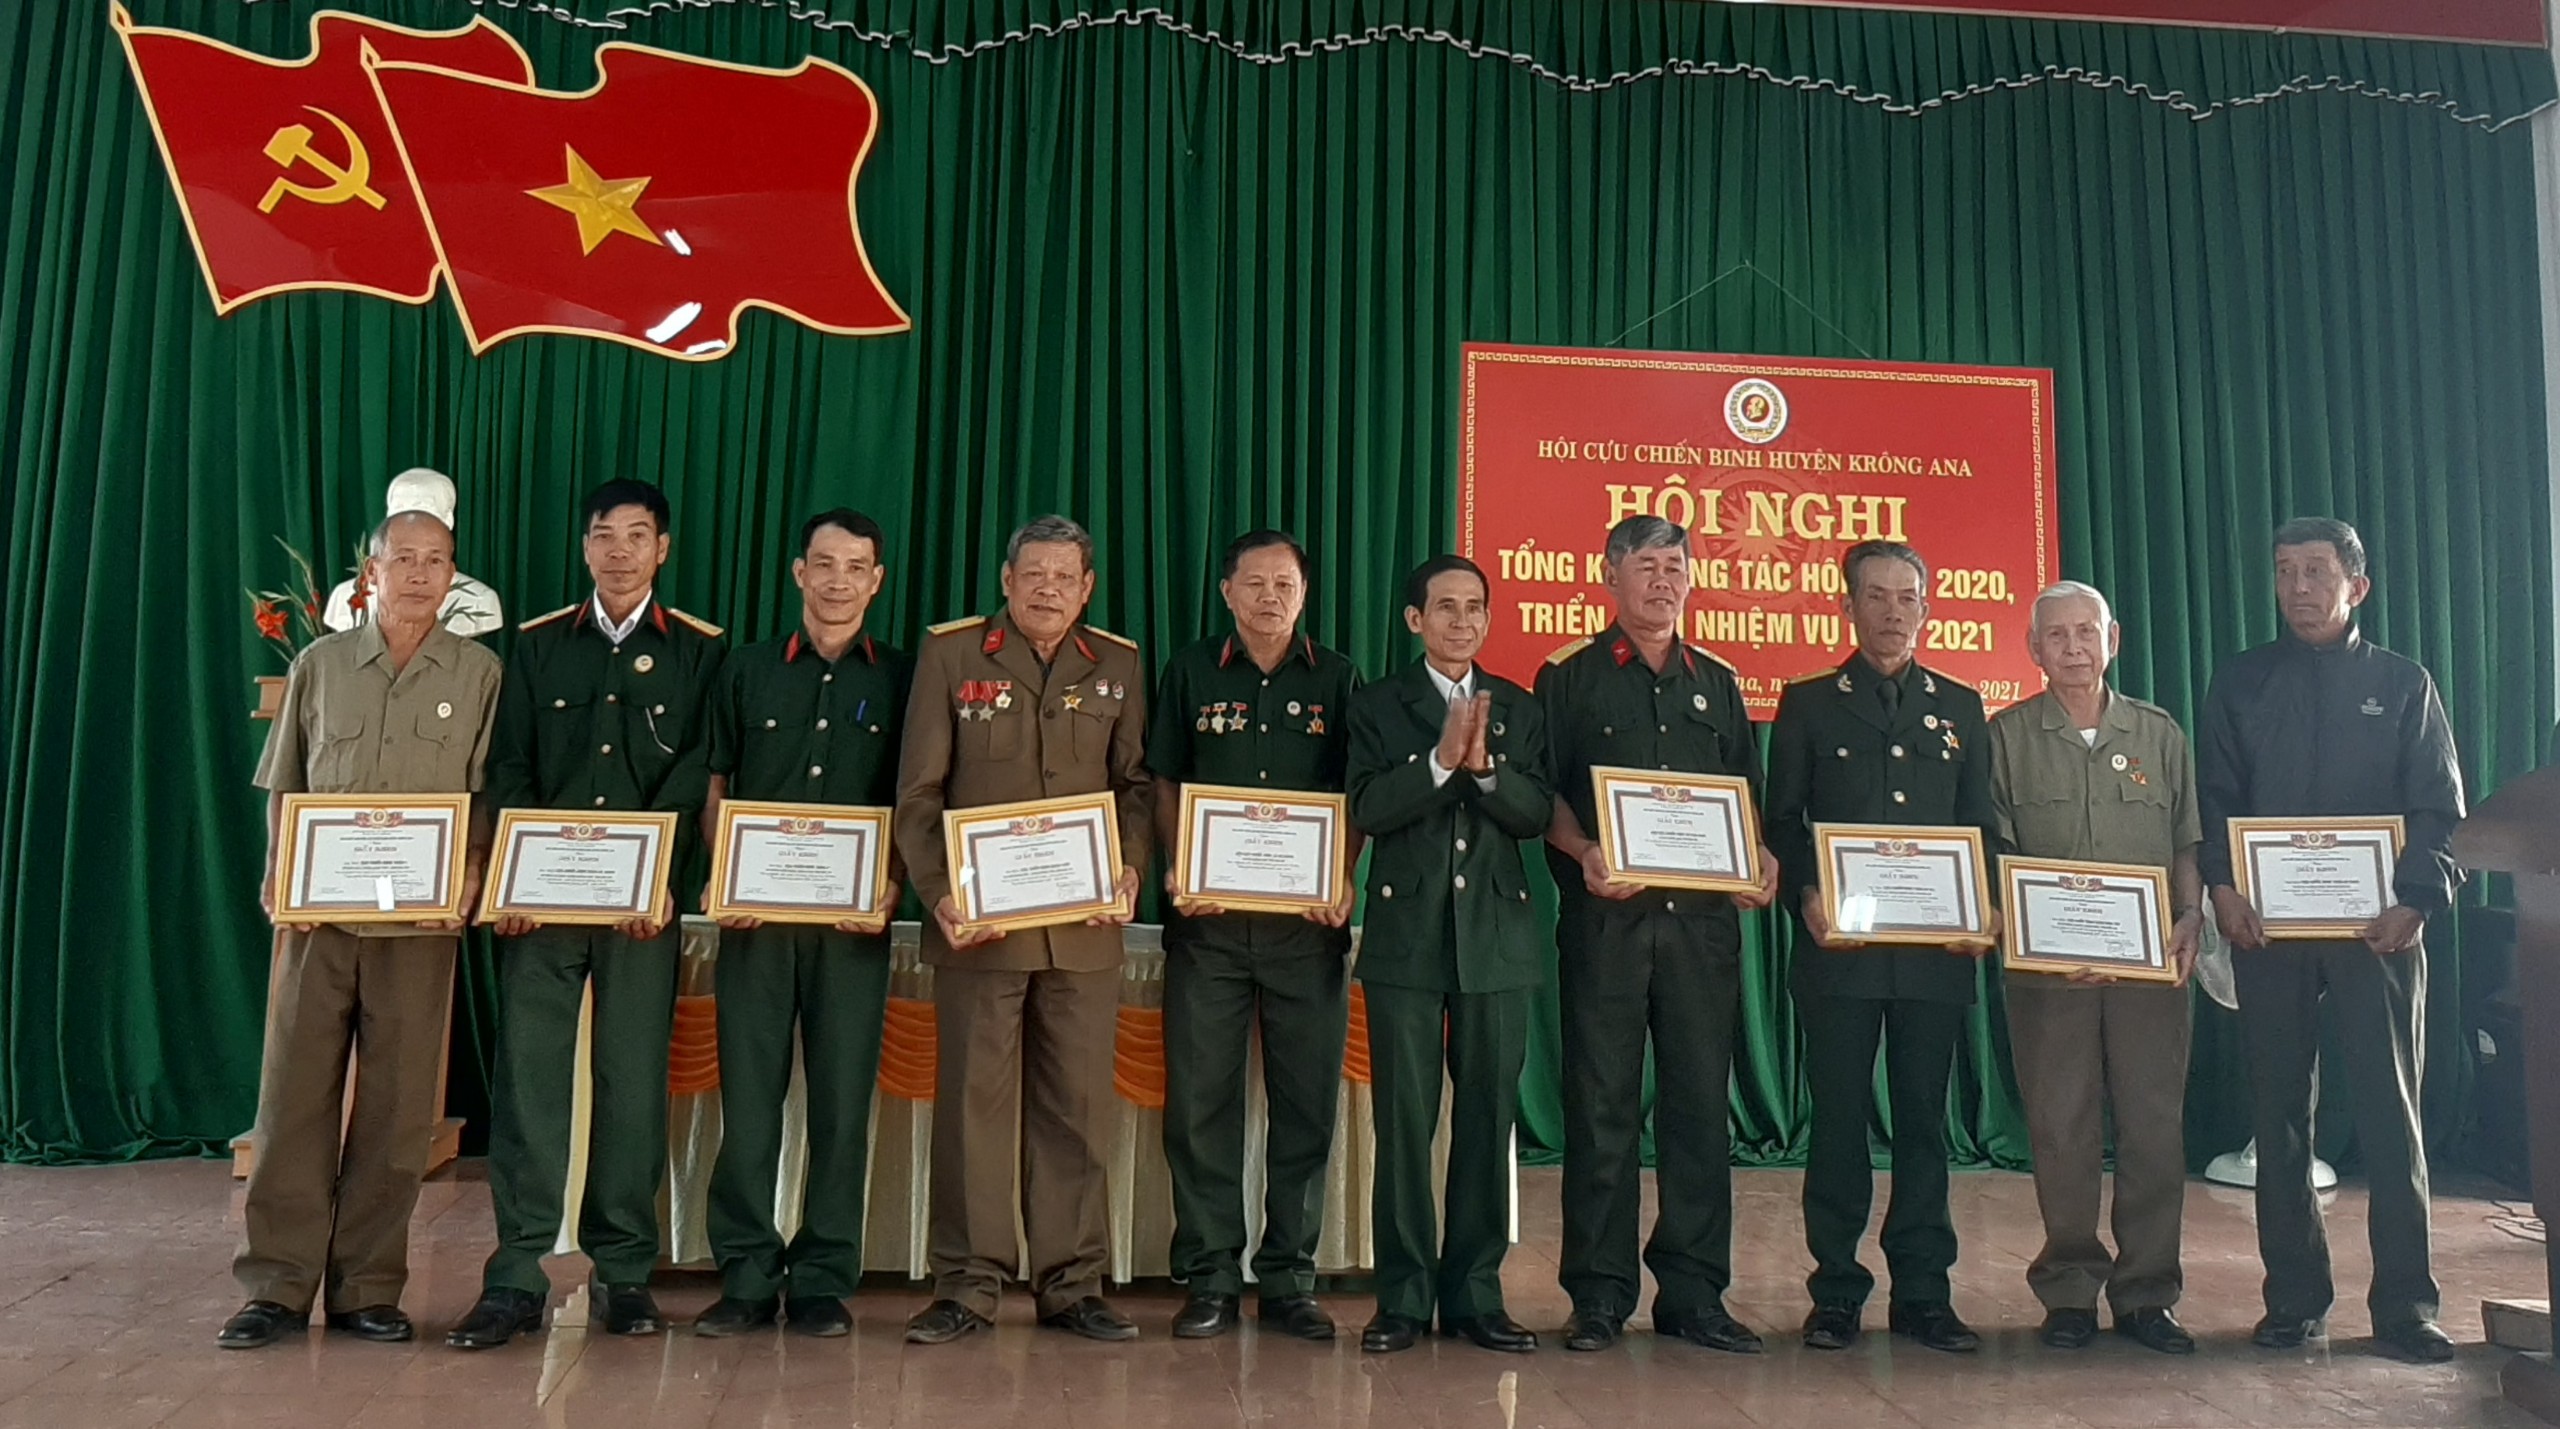 Hội Cựu chiến binh huyện Krông Ana triển khai nhiệm vụ năm 2021